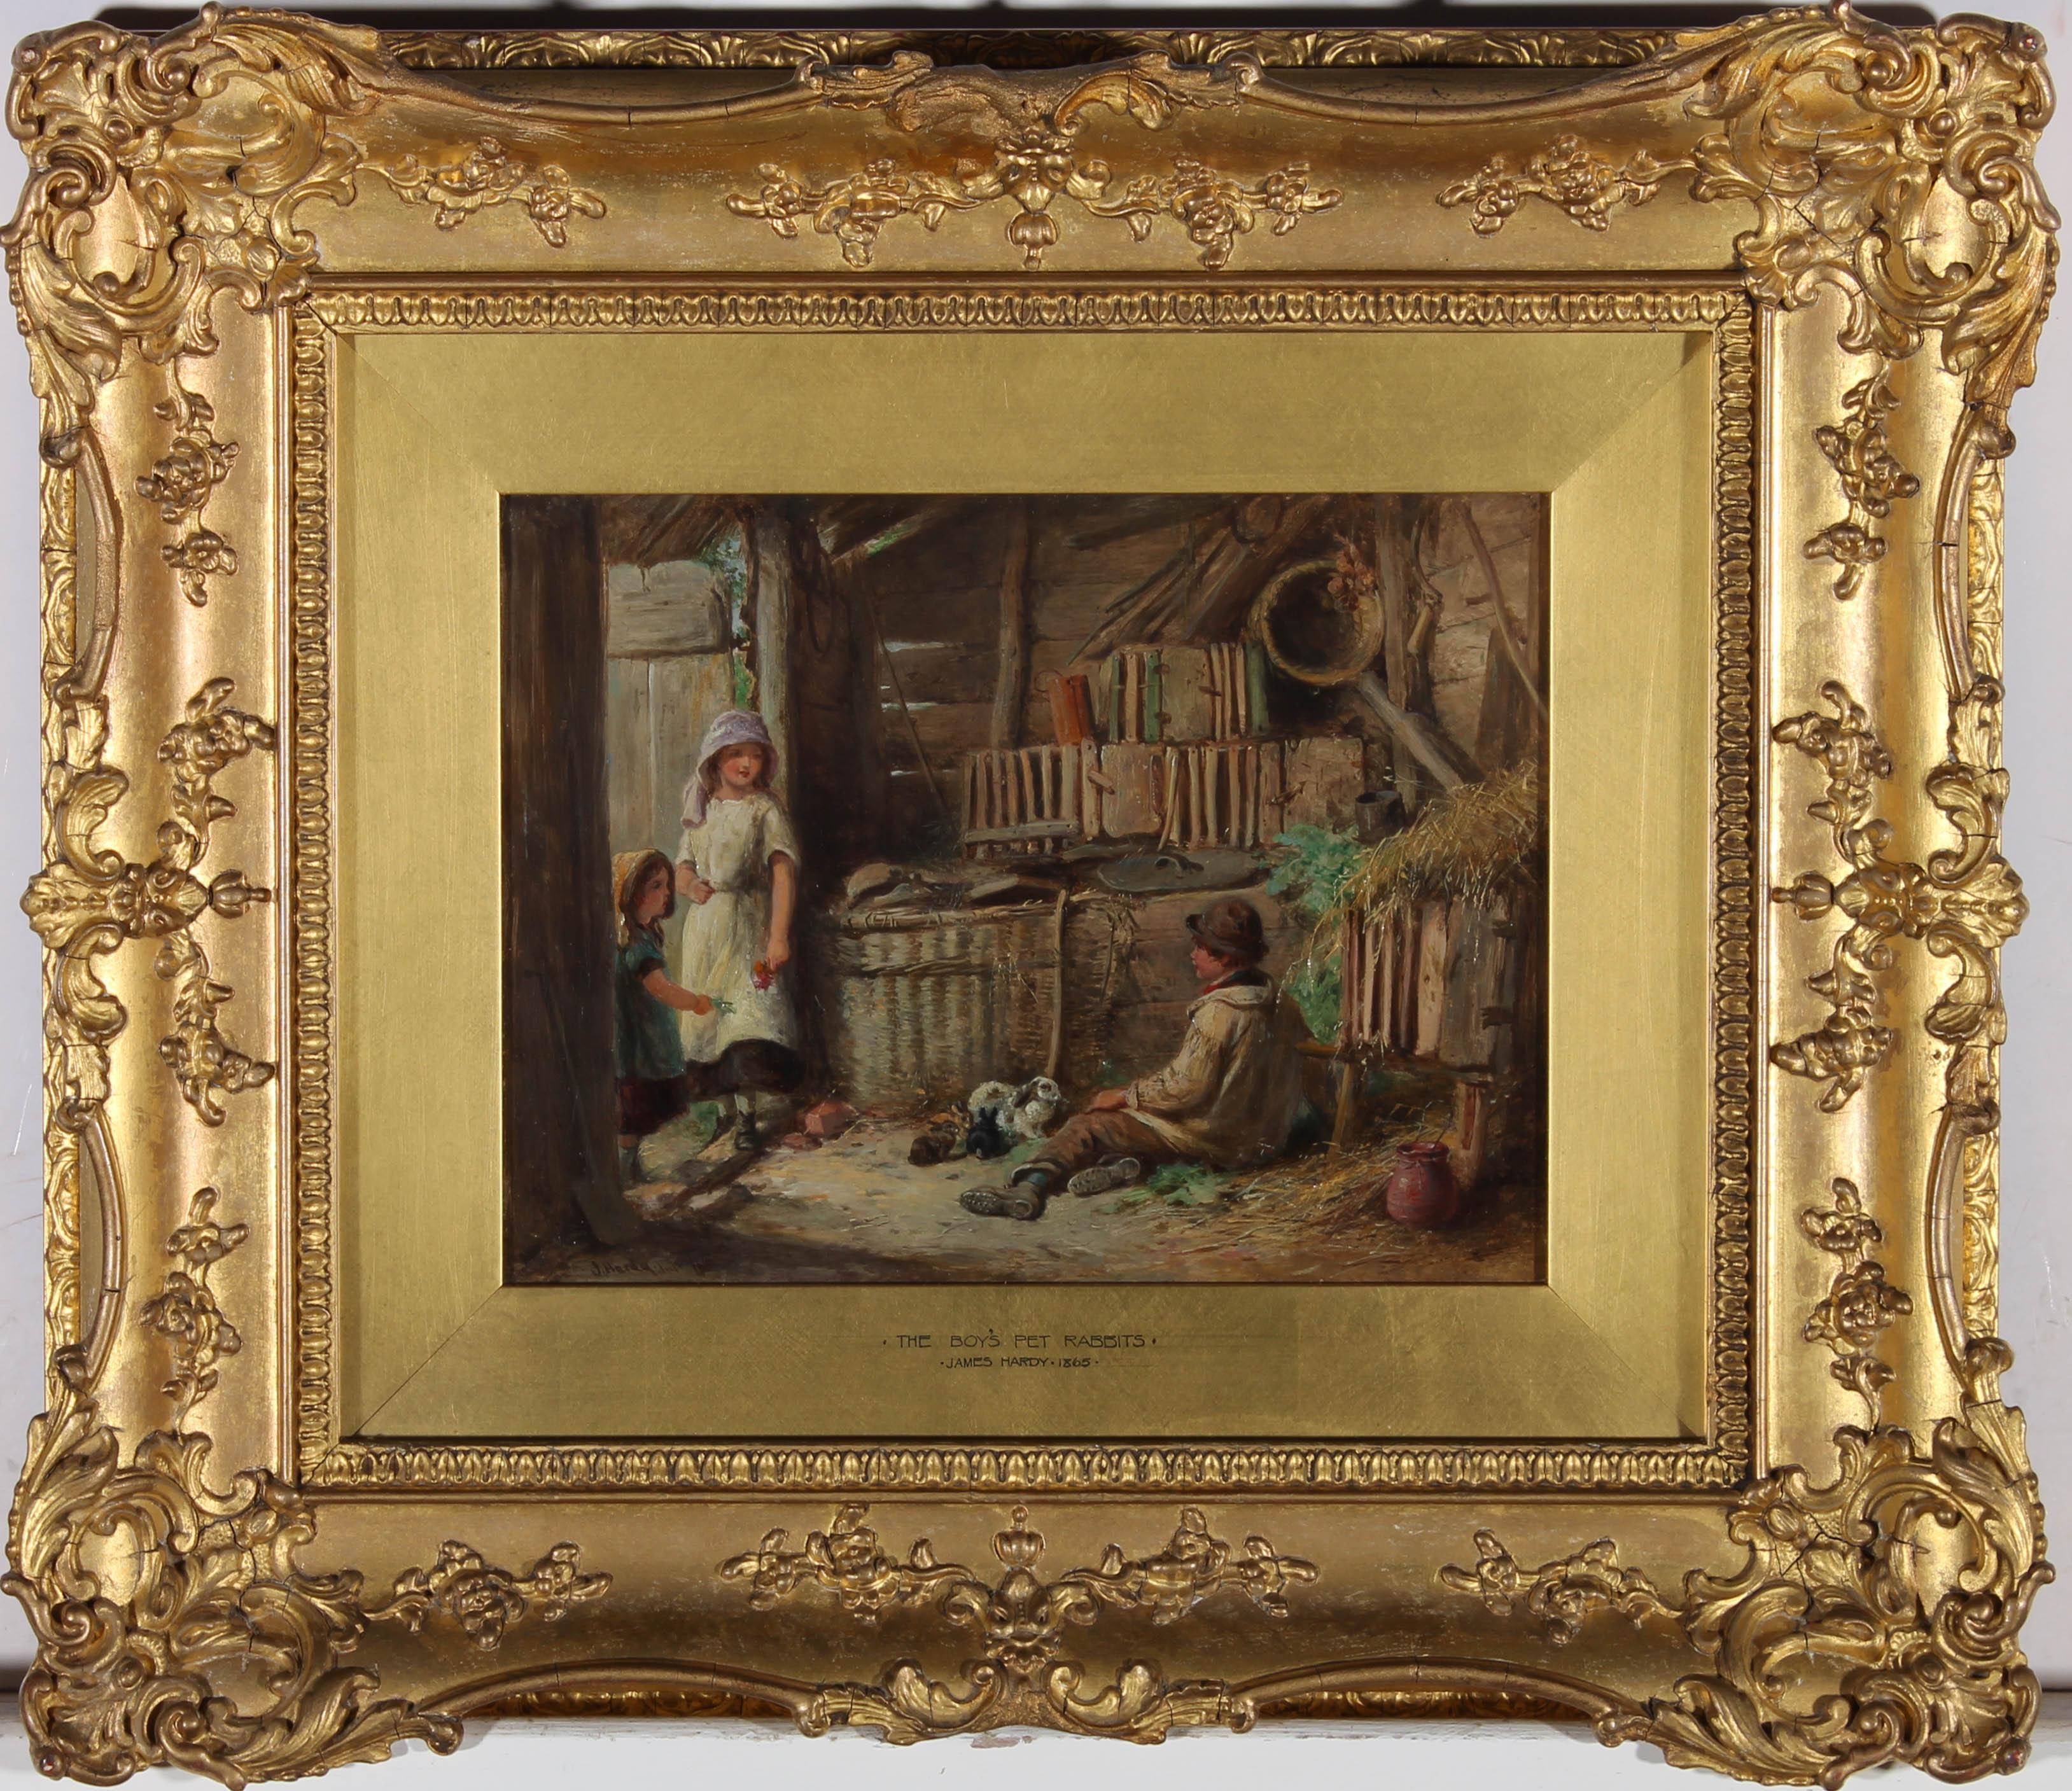 <p>Ein exquisites Beispiel für das Werk des viktorianischen Genreszenenmalers Thomas Hardy Junior. Die Szene zeigt das Innere einer Scheune, in der ein kleiner Junge mit seinen Lieblingskaninchen auf dem mit Heu bestreuten Boden sitzt. Zwei kleine